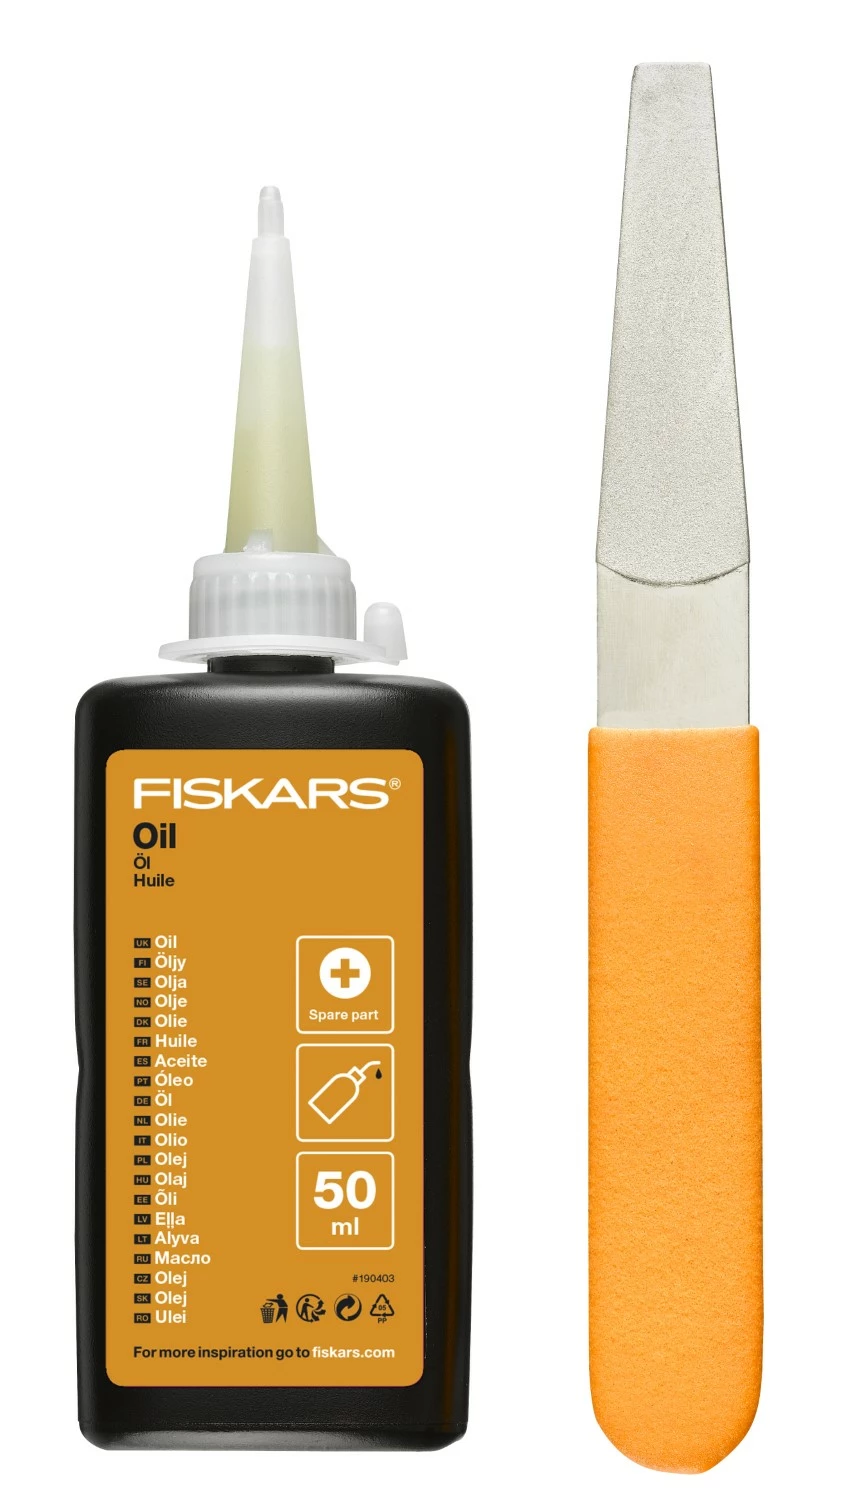 Fiskars - Kit d’entretien pour les outils de coupe - Avec lime diamant - flacon d’huile et guide d’entretien